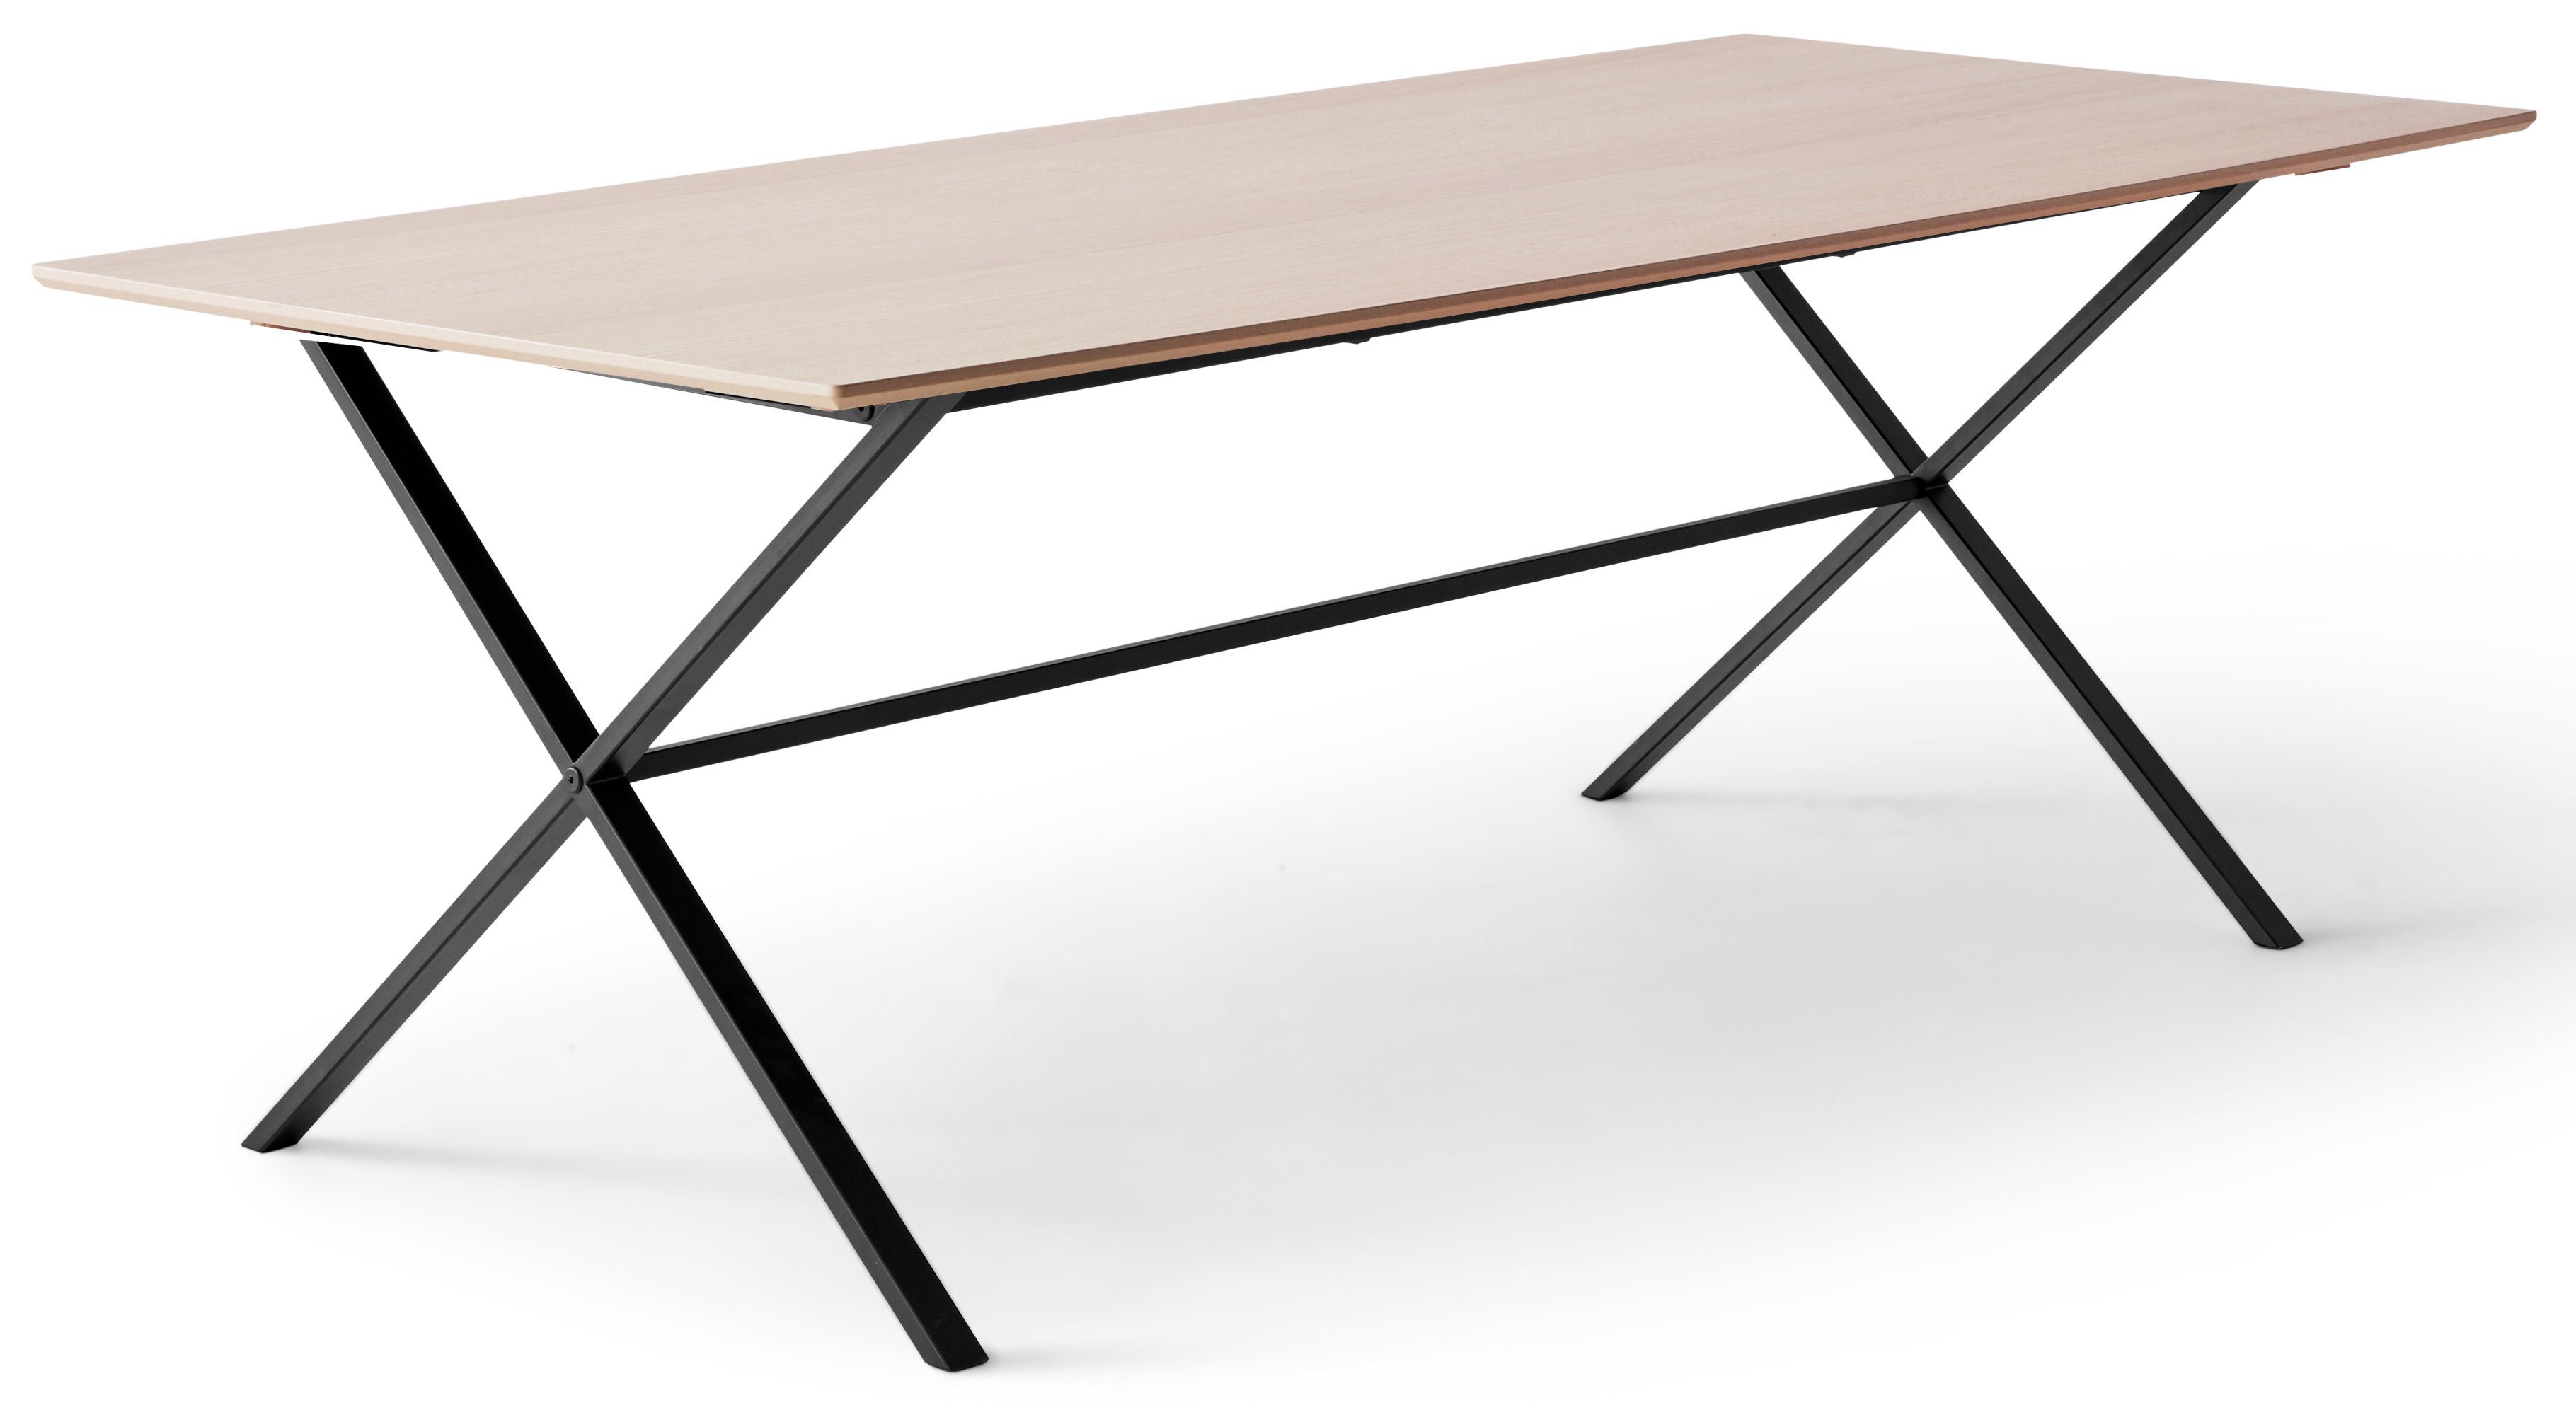 Esstisch Metallgestell Tischplatte Naturfarben Furniture gekreuztes by rechteckige Meza Hammel, MDF, Hammel